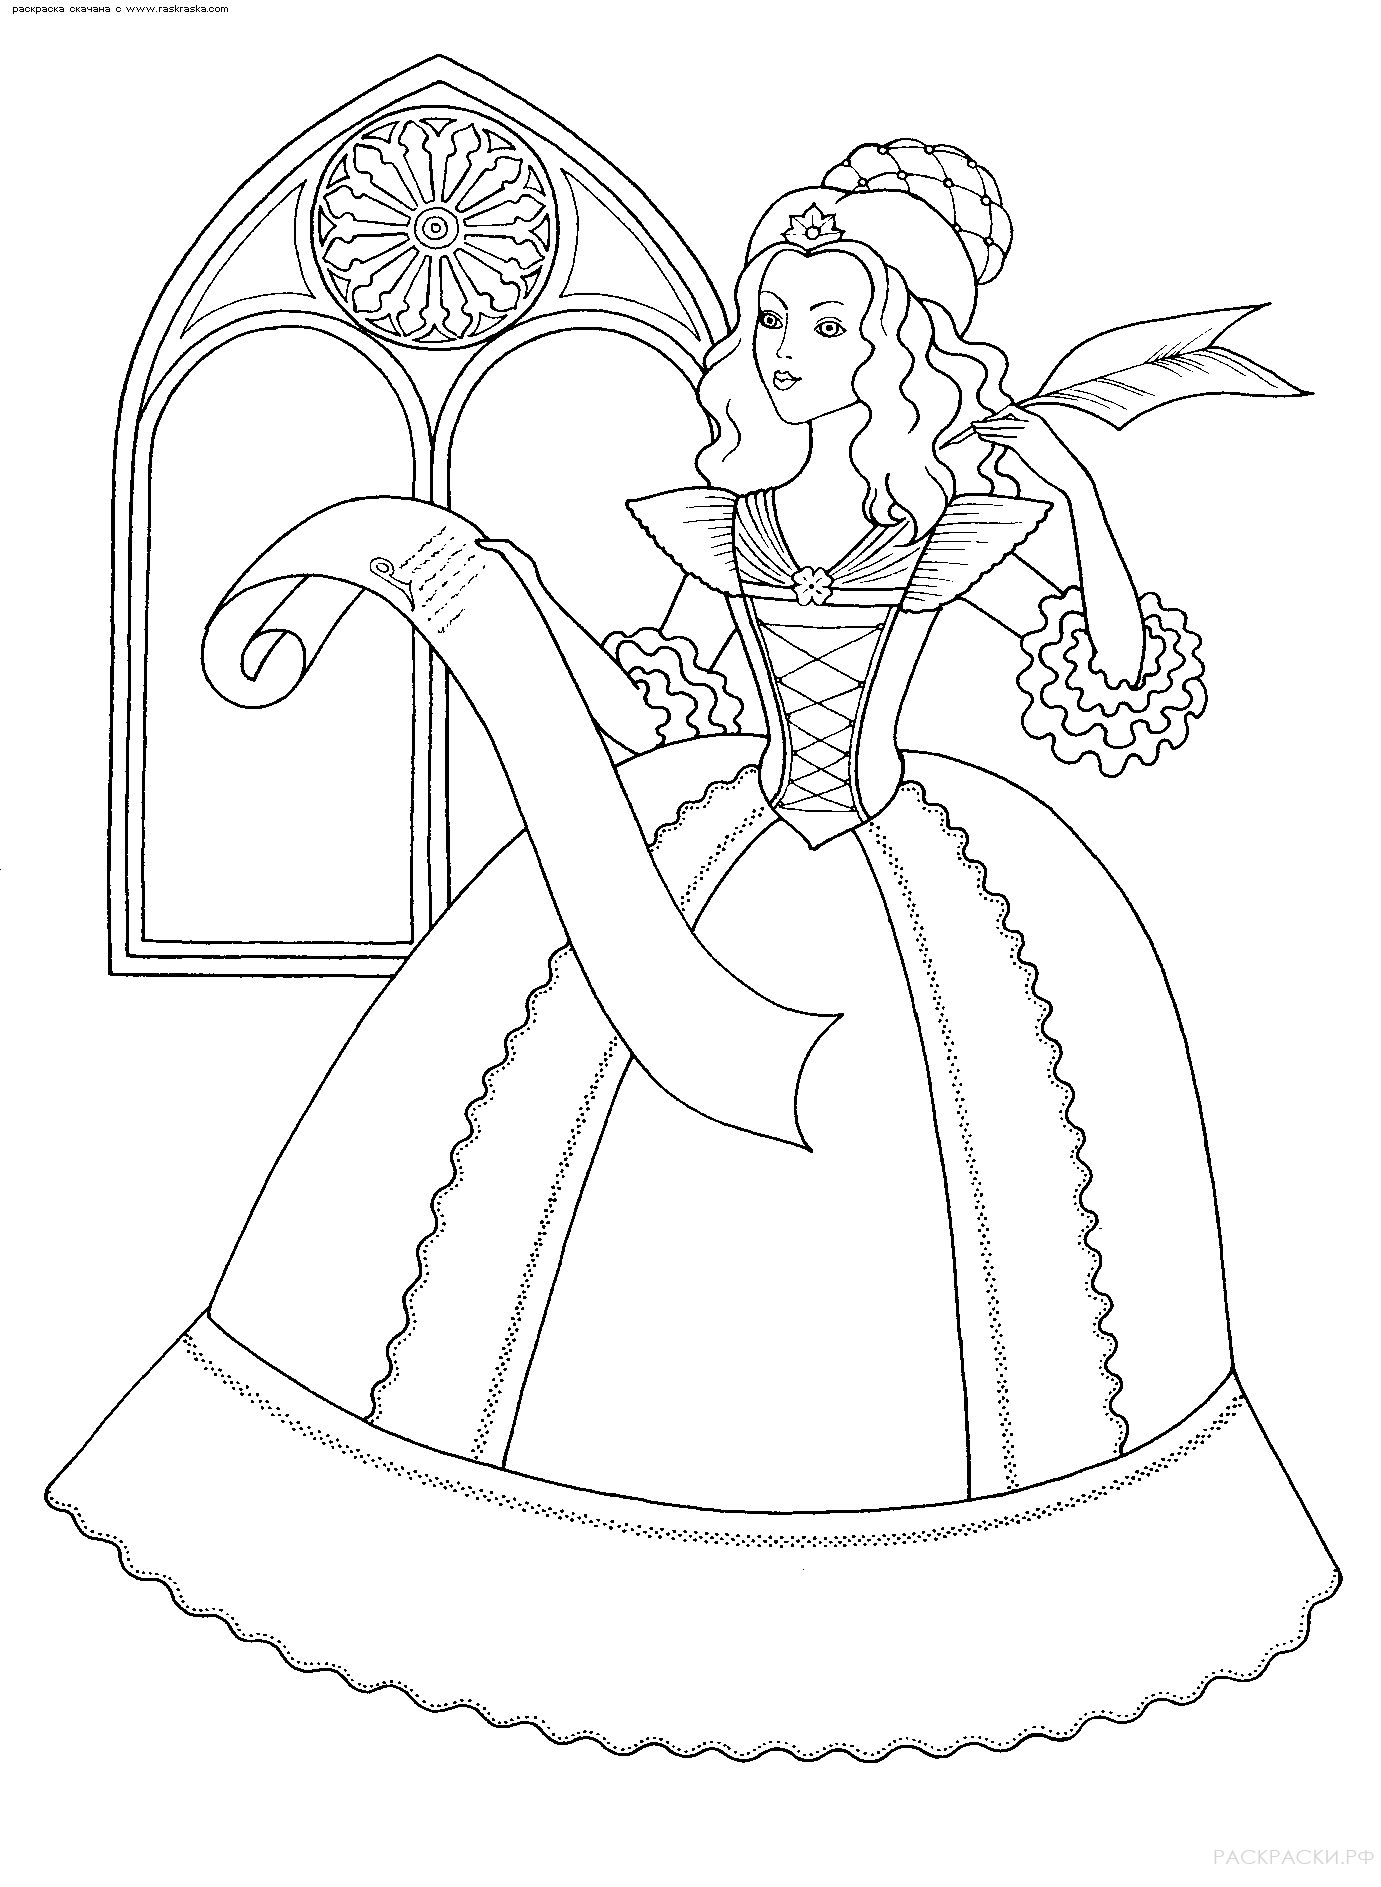 Раскраска для девочек Принцесса и письмо